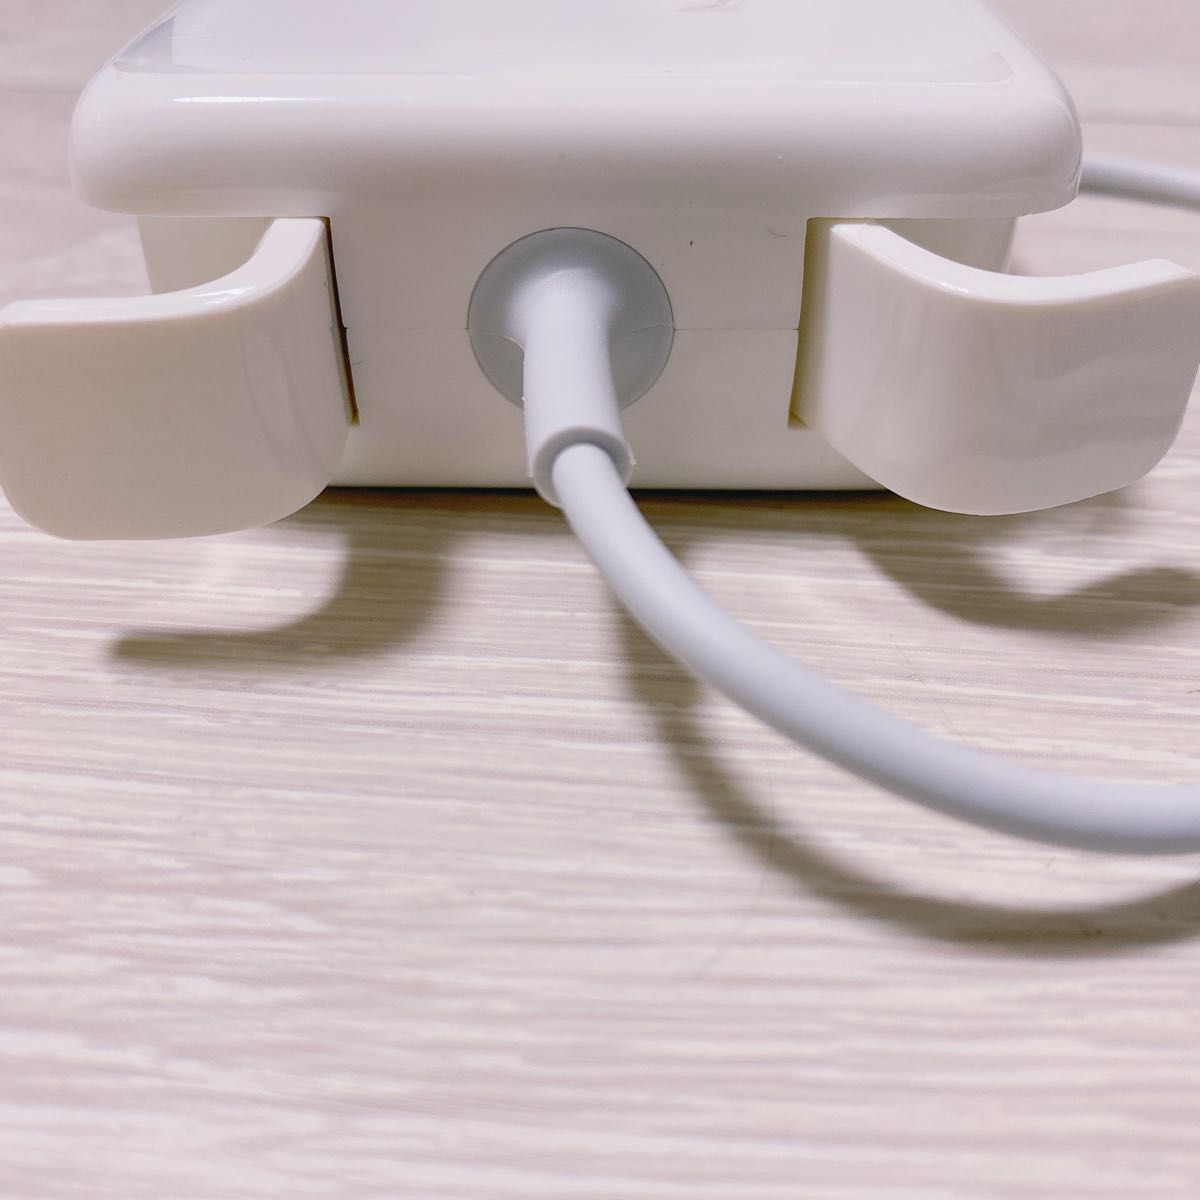 新品 Macbook Air 電源互換アダプタ Mac 45W MagSafe 2 T型